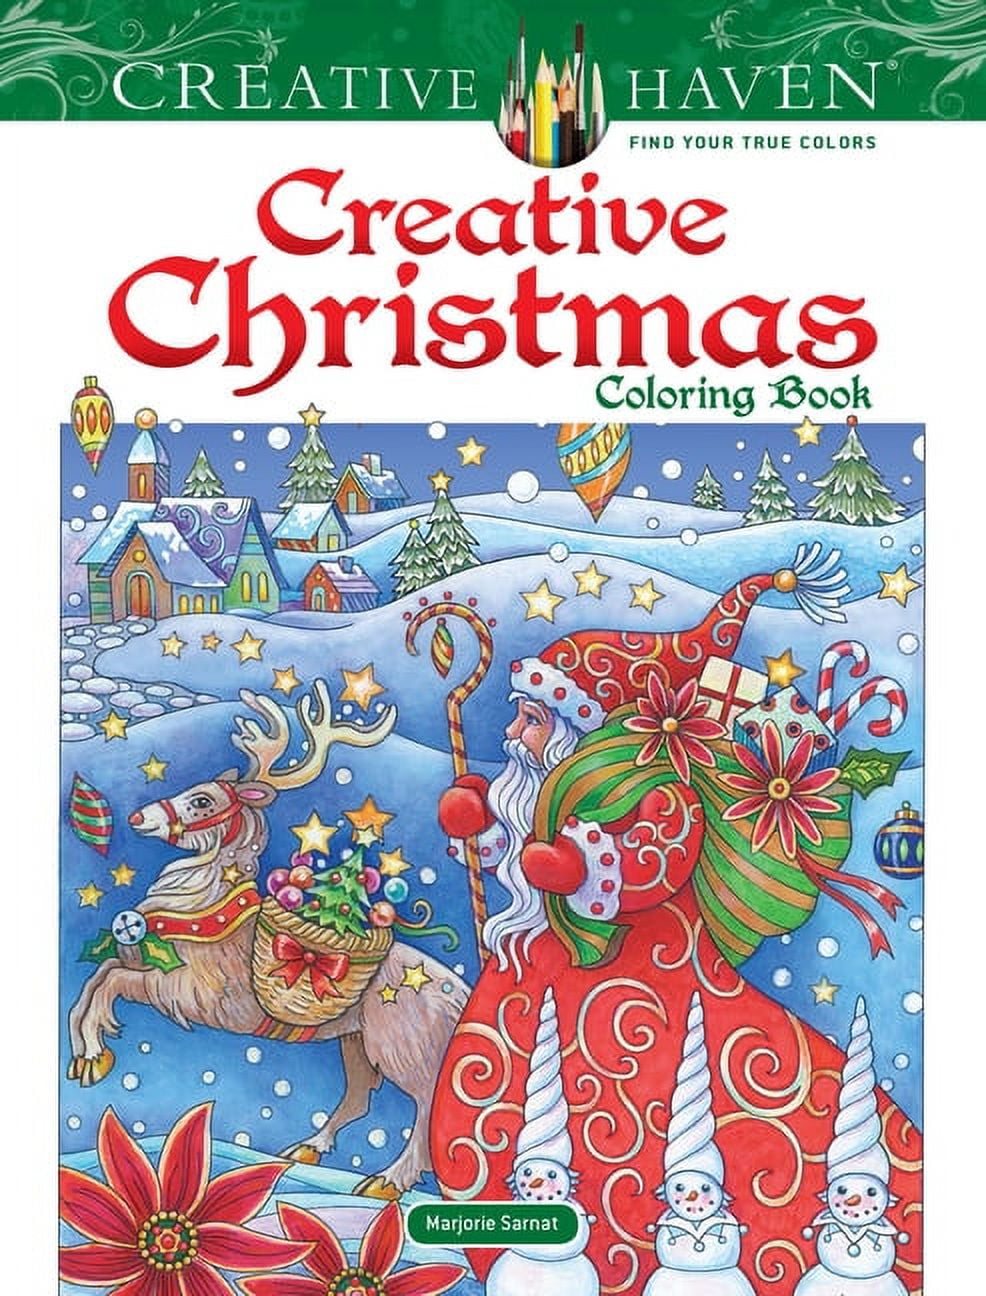 Christmas Coloring Book For Kids: Christmas Coloring Book for Kids